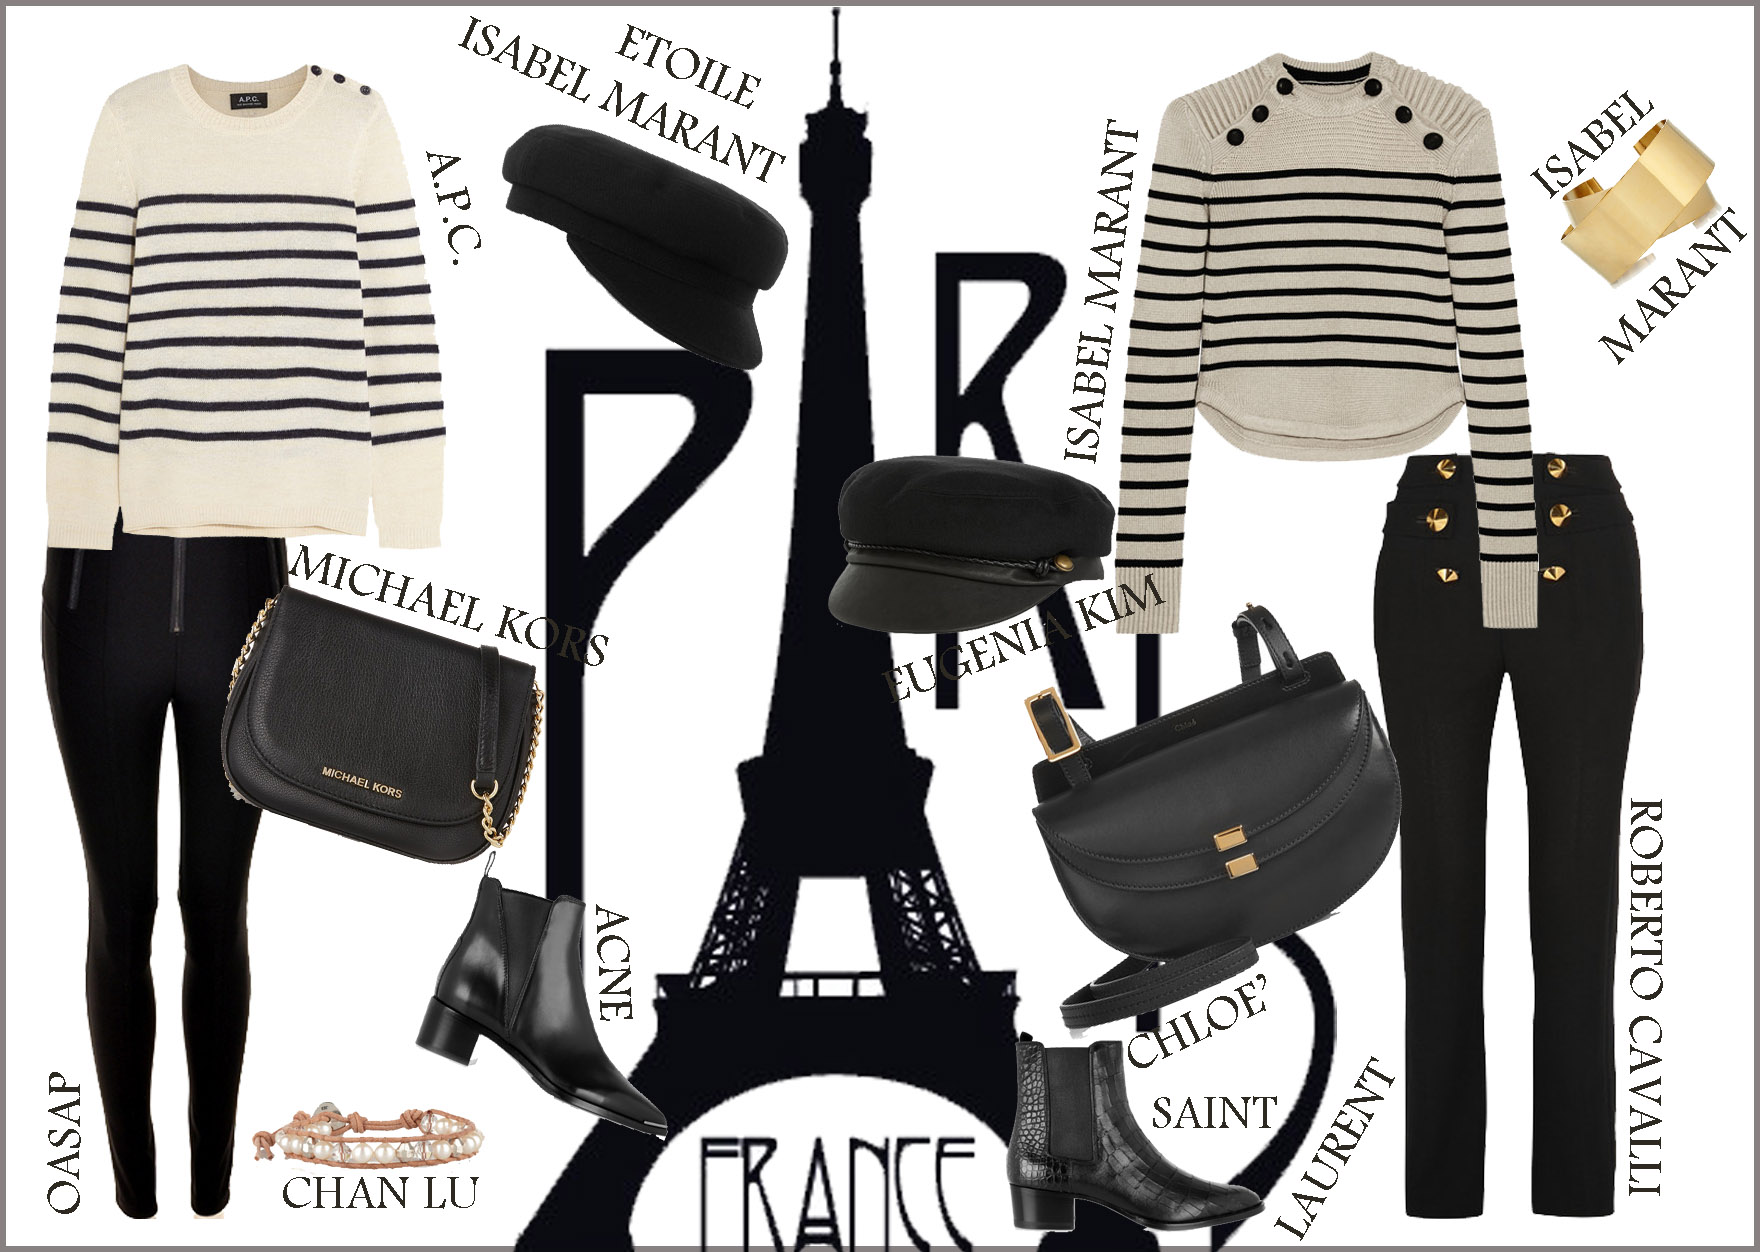 Paris fashion week 2015